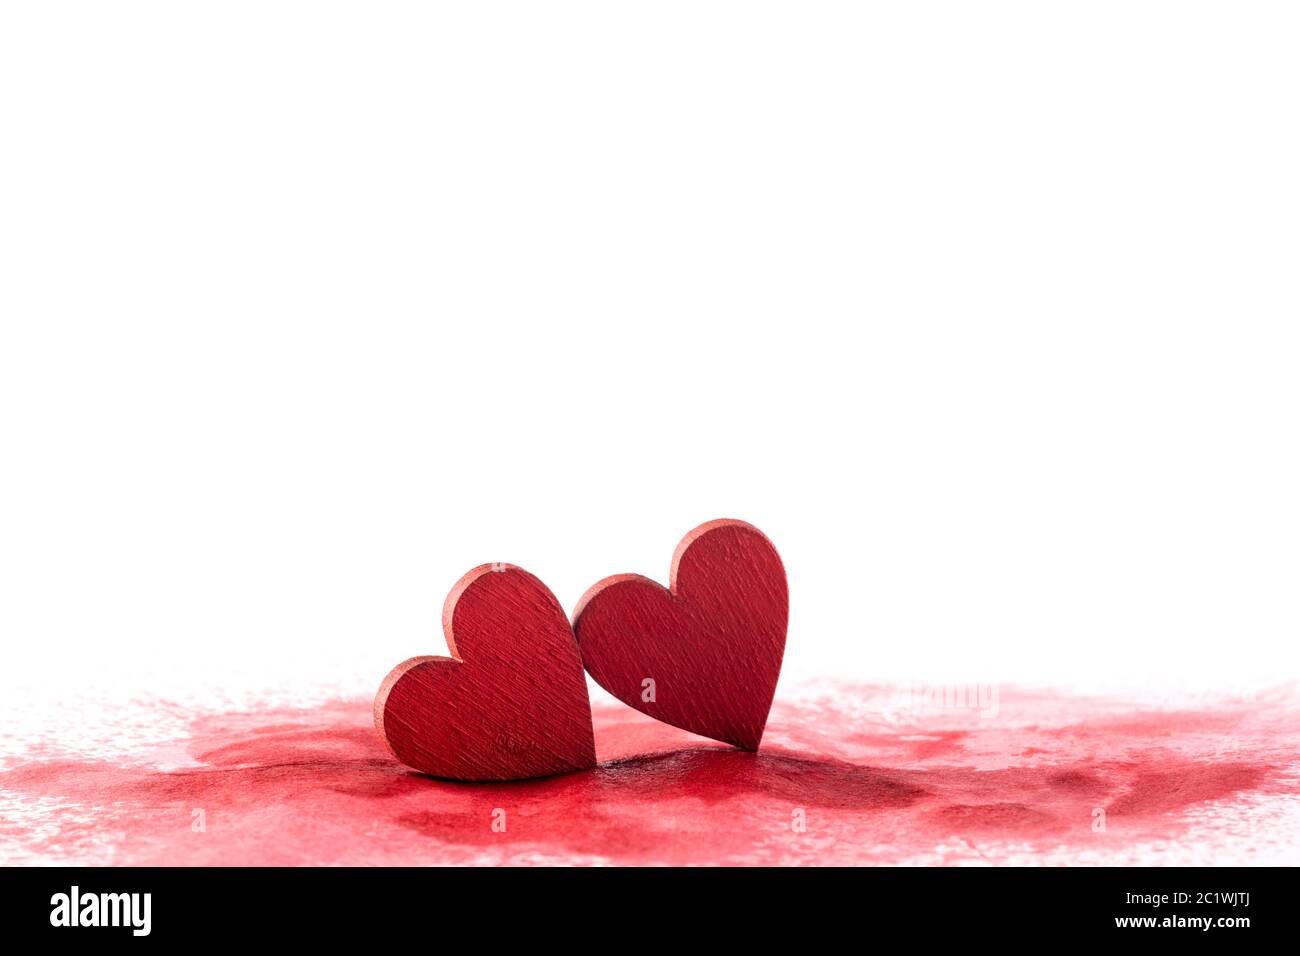 Zwei rote Herzen auf einem blutigen Hintergrund Stockfoto